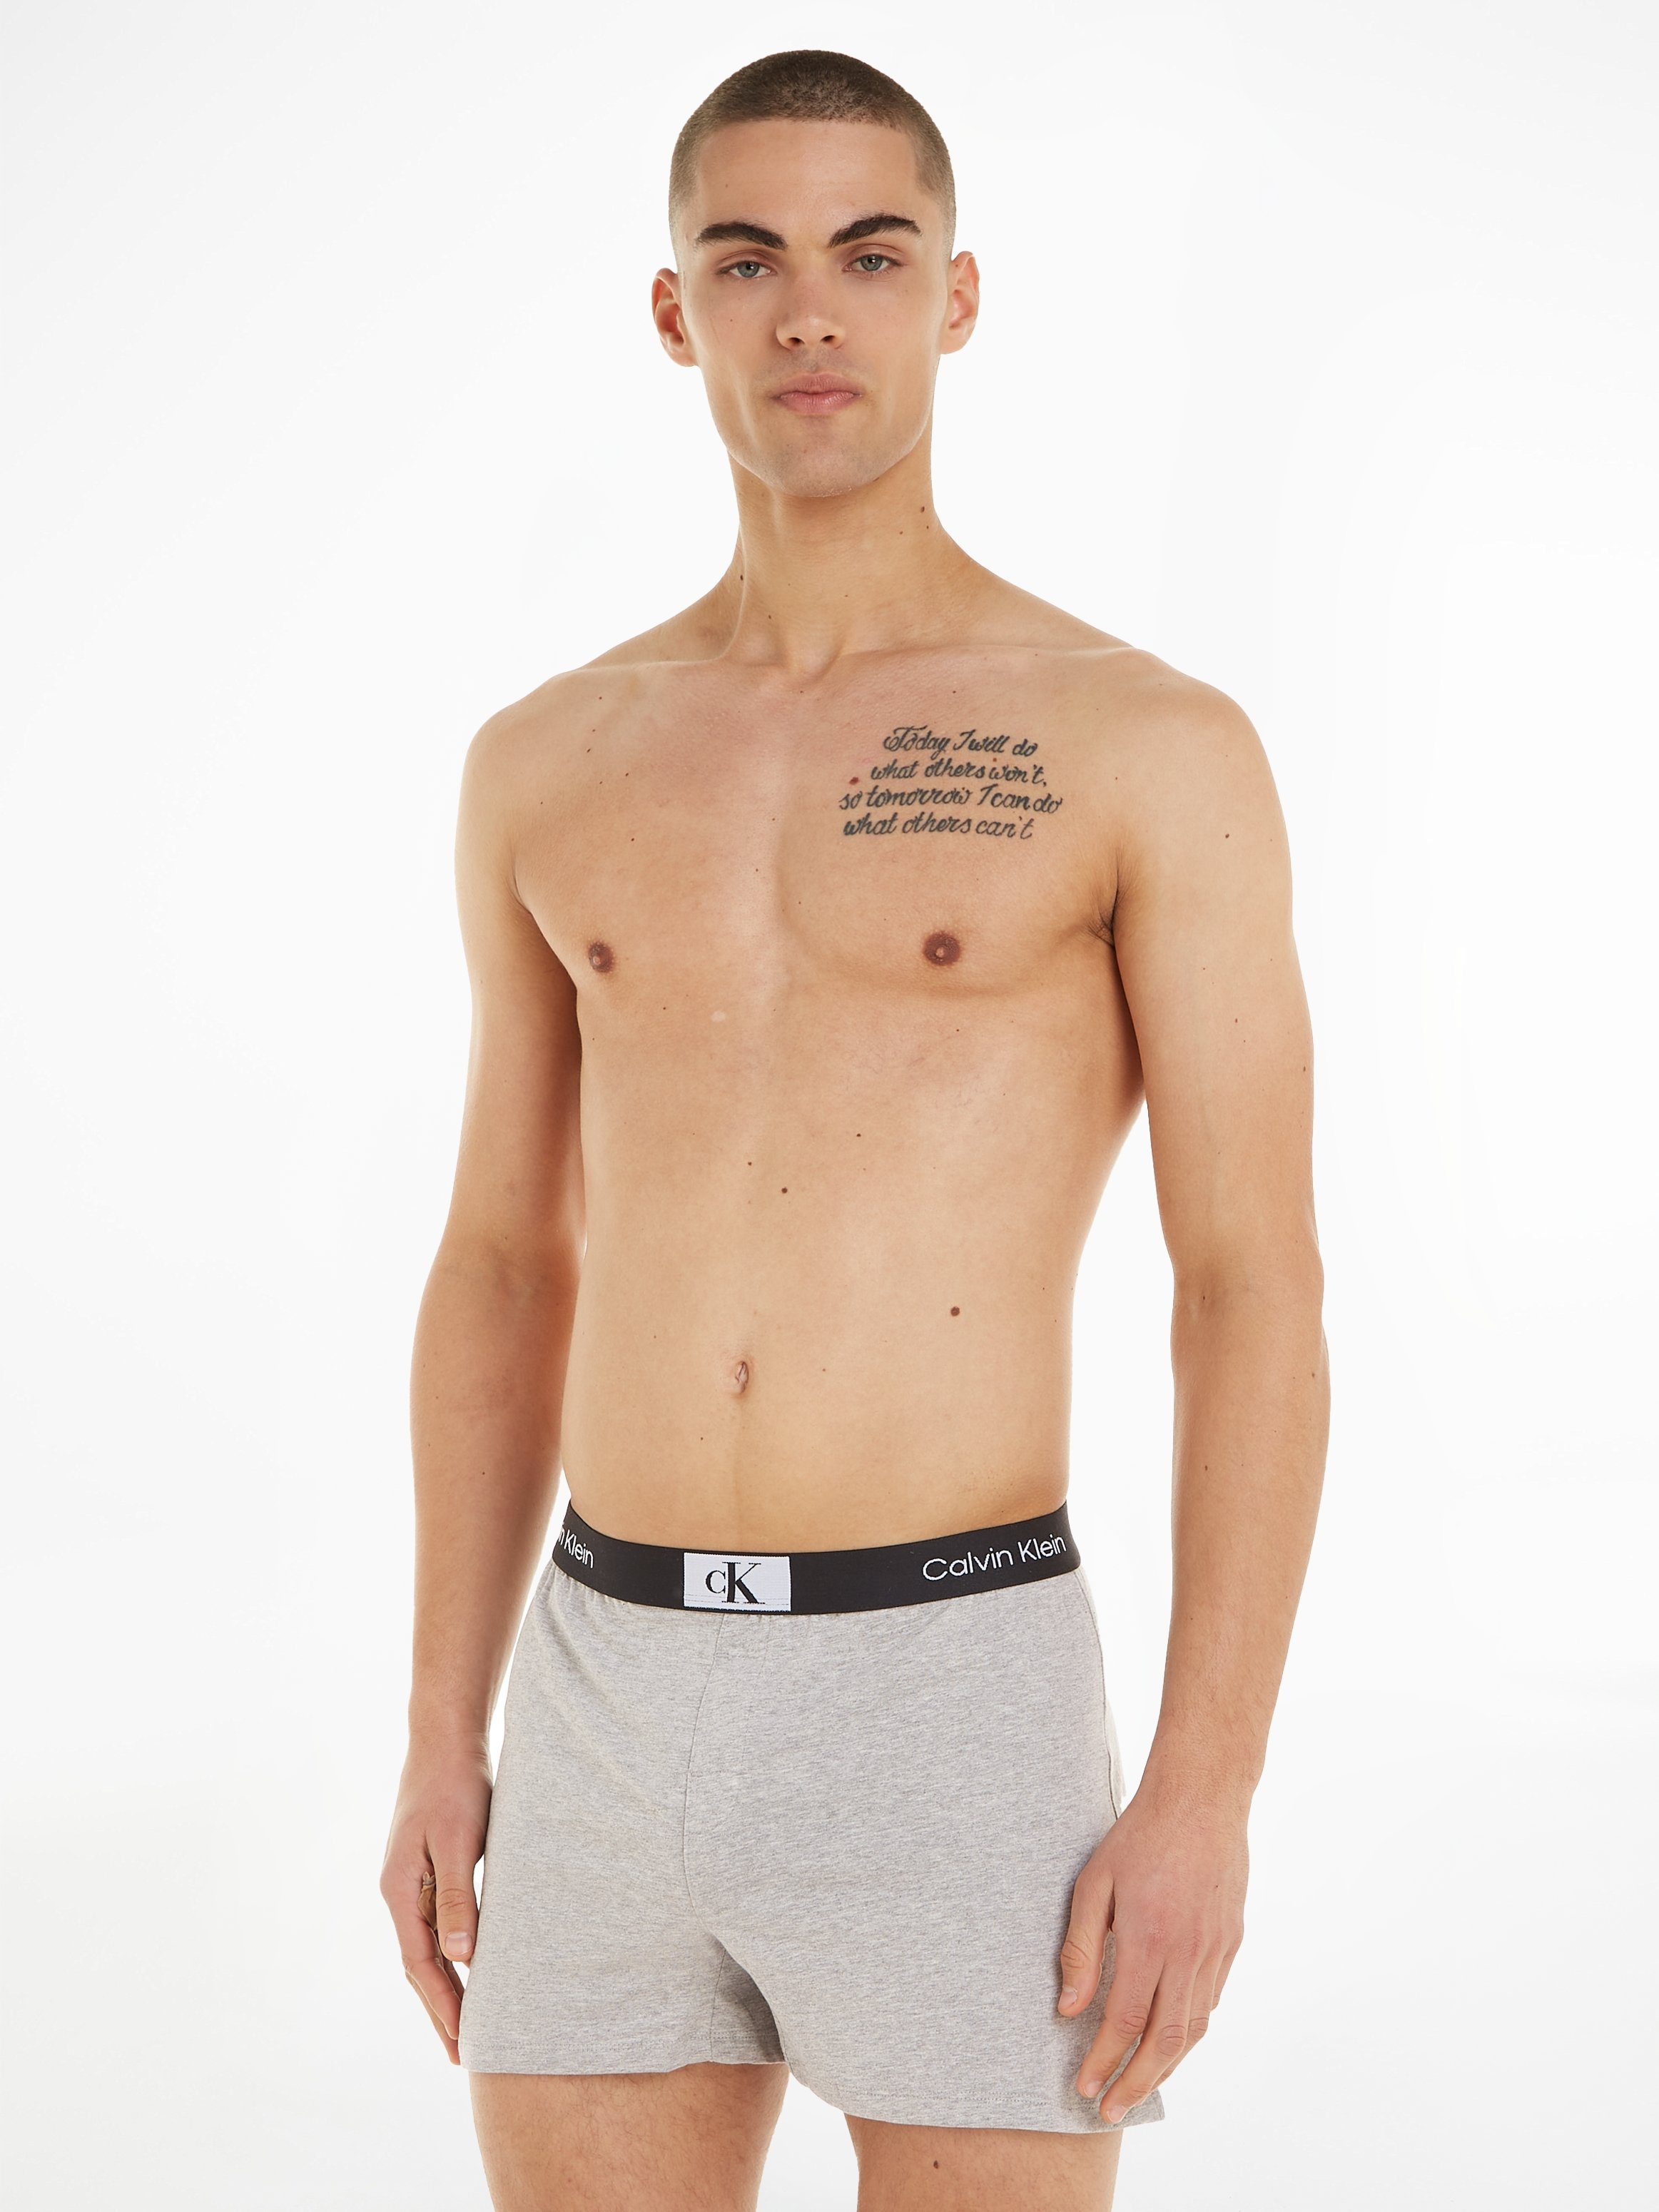 GREY-HEATHER SHORT Klein Logobund mit klassischem Underwear Calvin SLEEP Schlafshorts